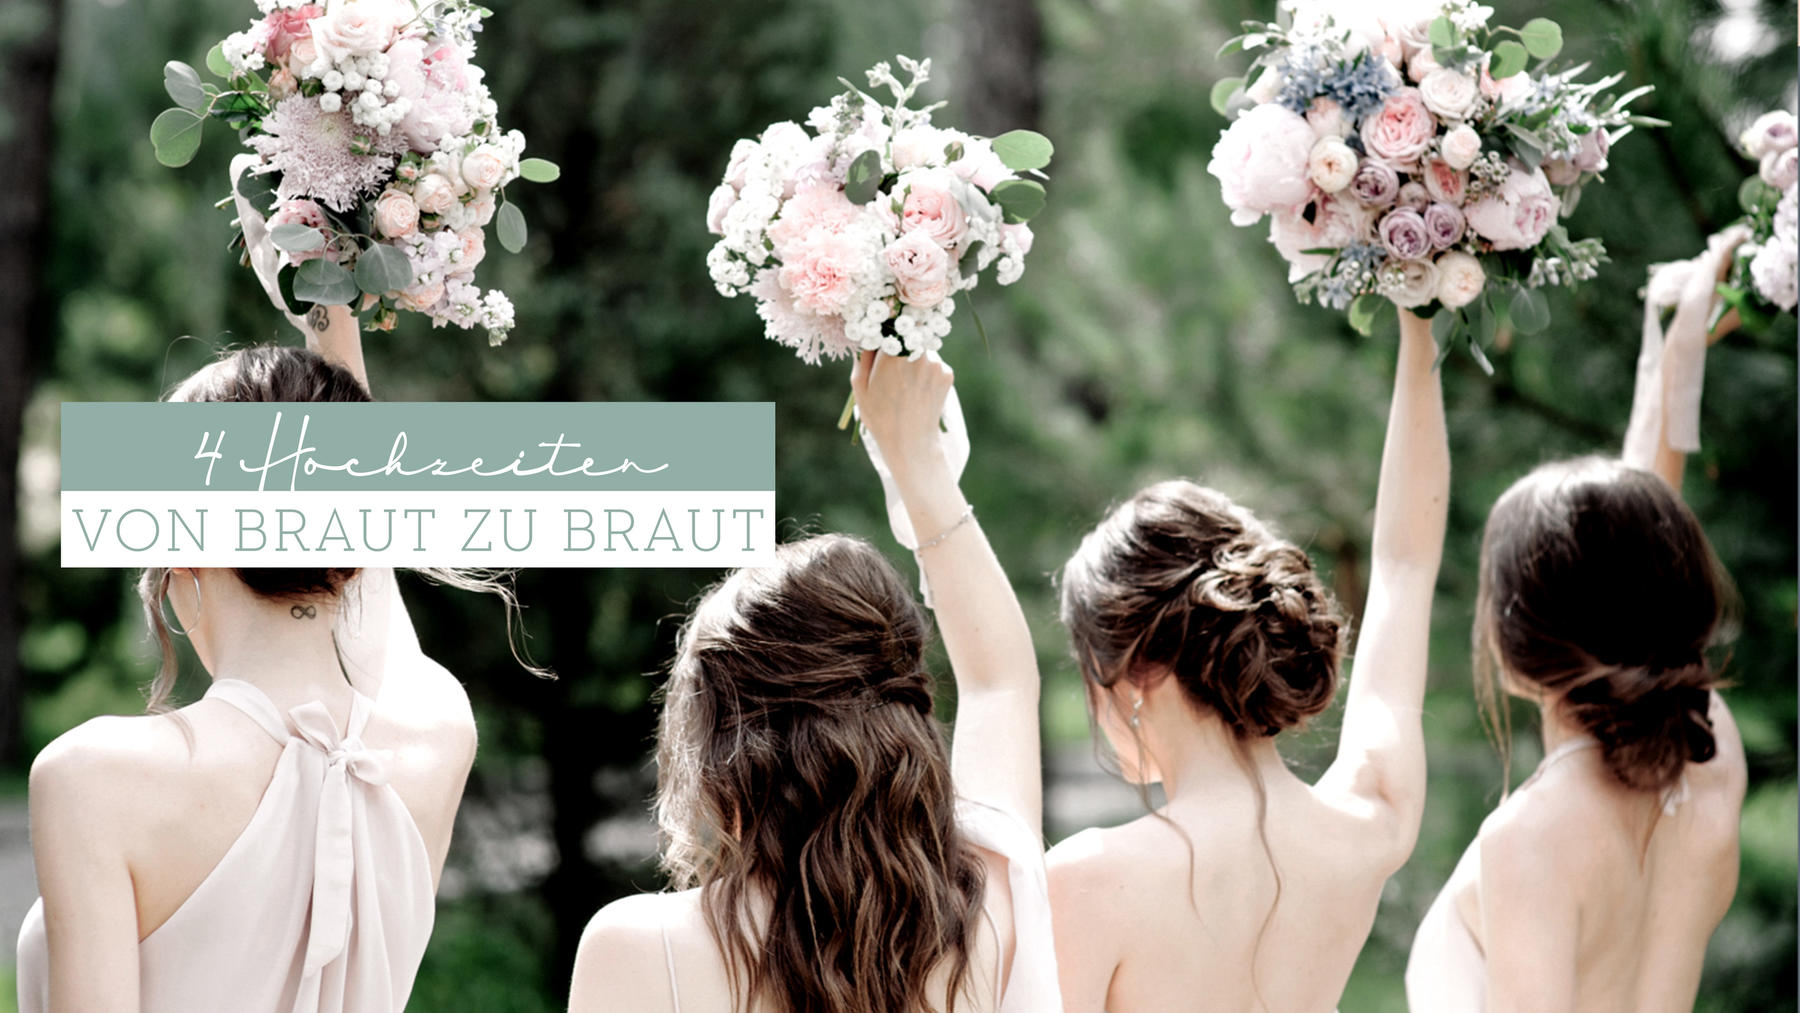 4 Hochzeiten - Von Braut zu Braut